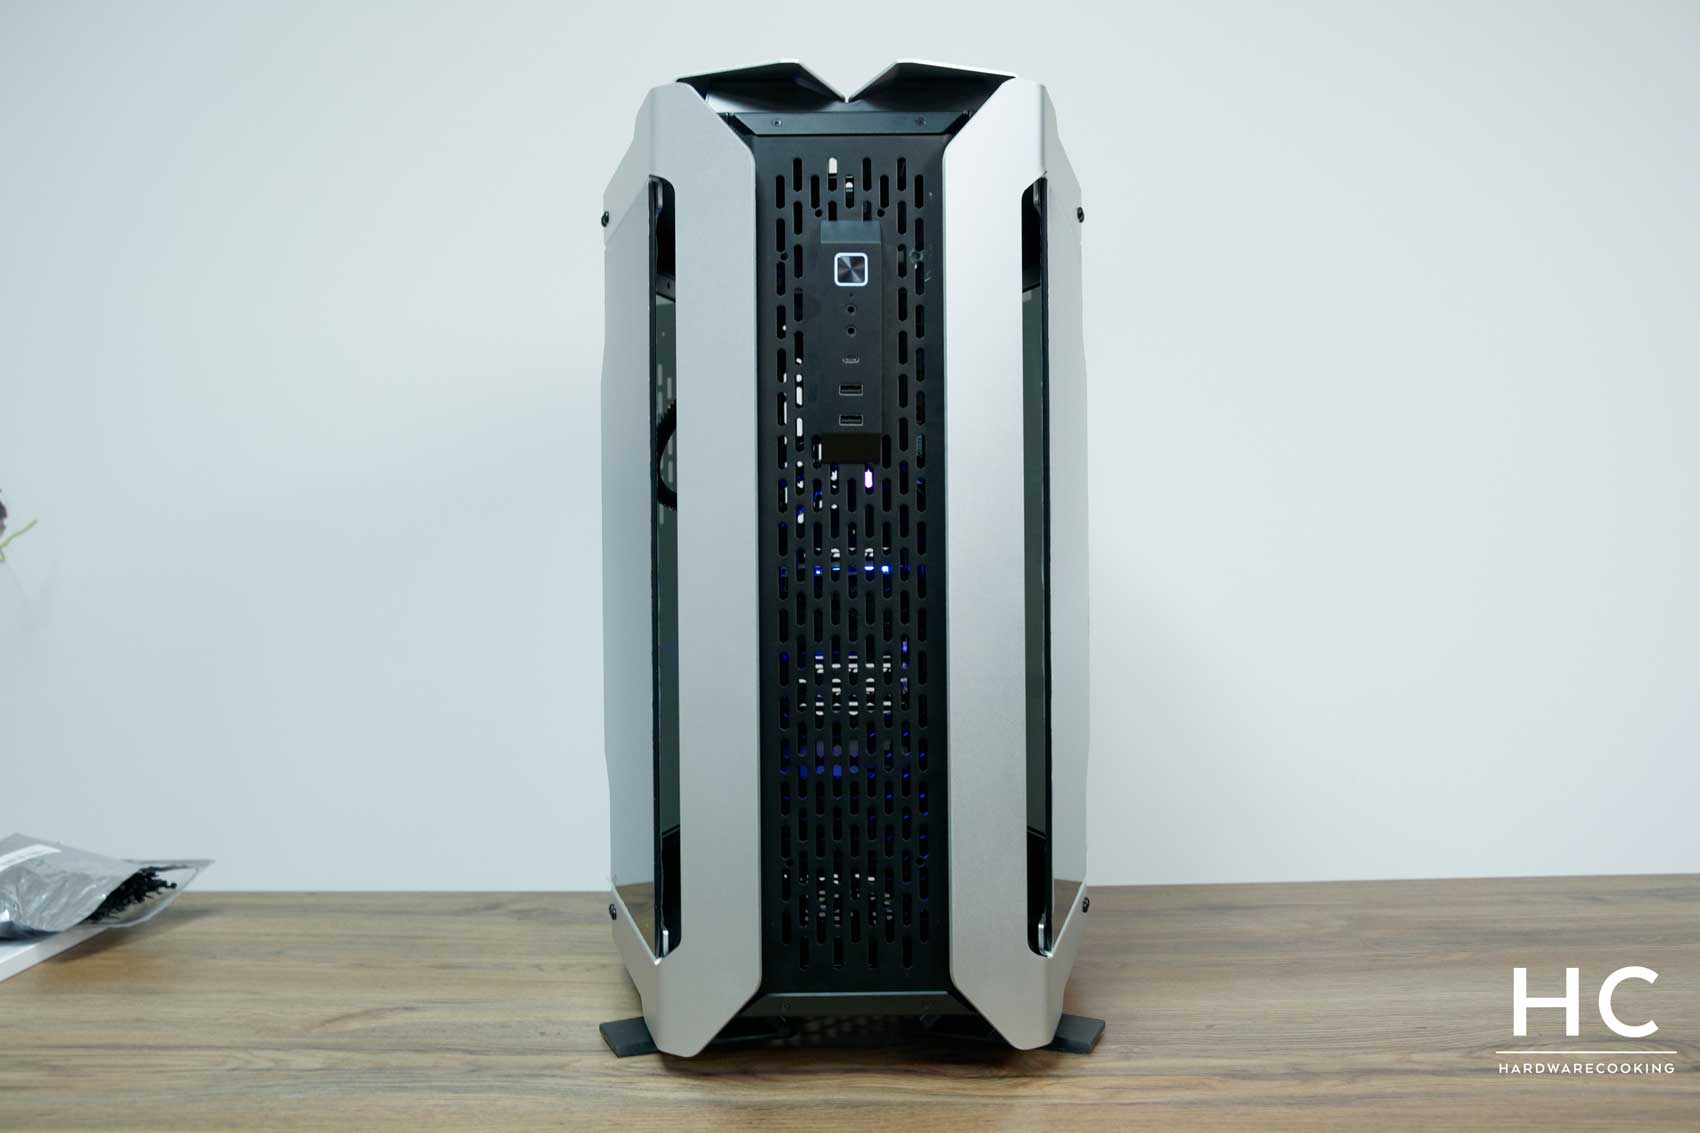 ODYSSEY X – LIAN LI est l'un des principaux fournisseurs de boîtiers PC